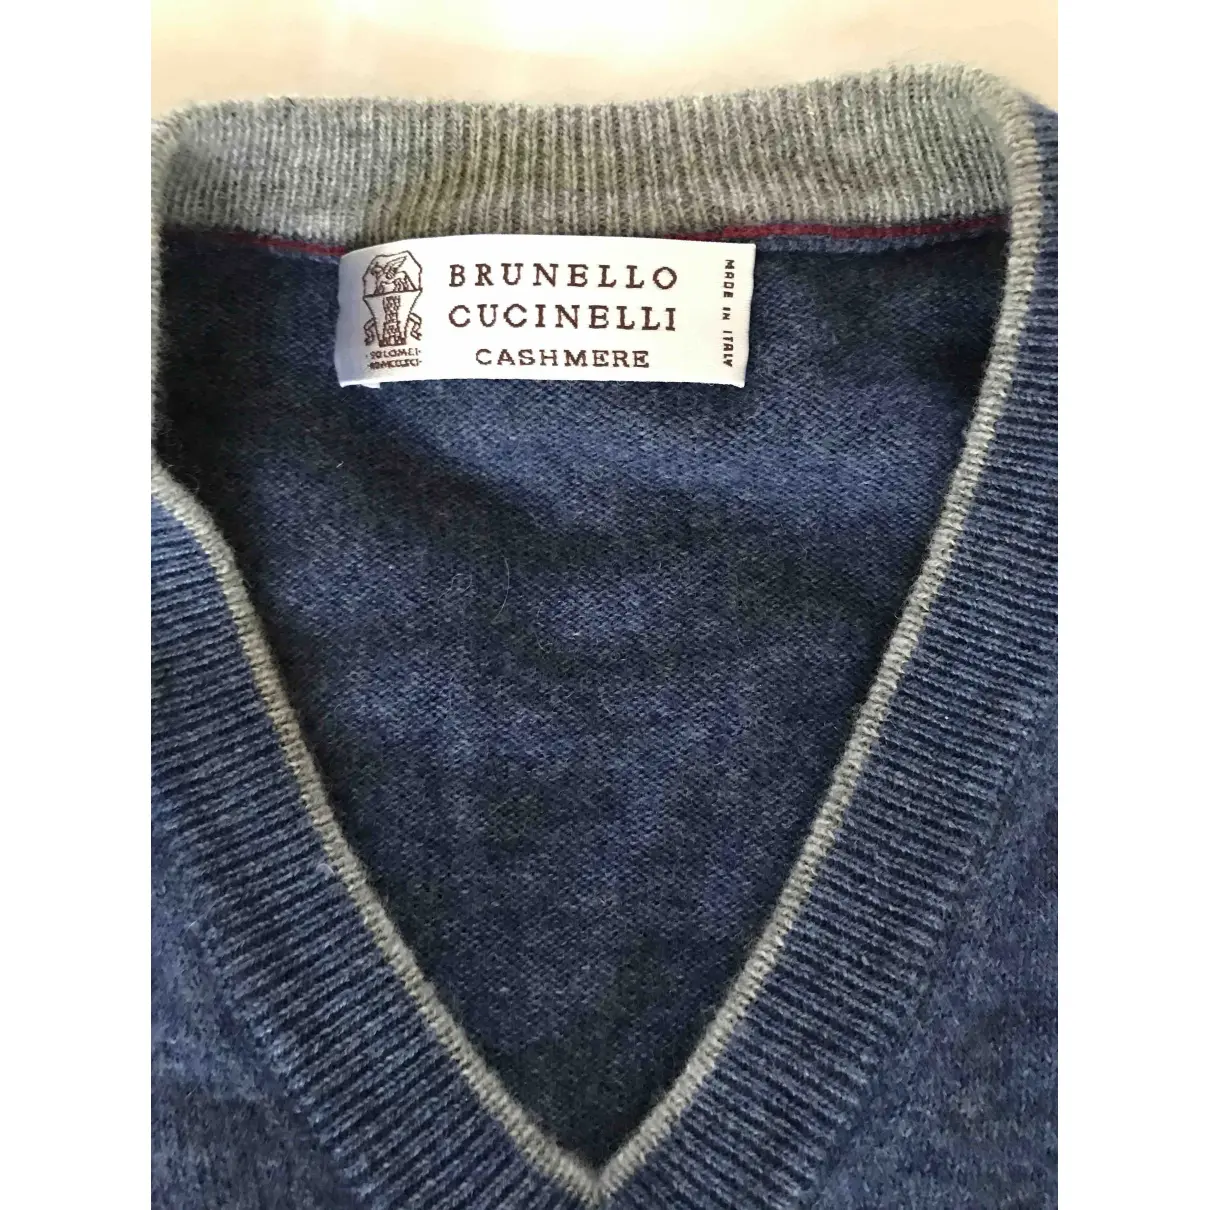 Brunello Cucinelli Cashmere pull for sale